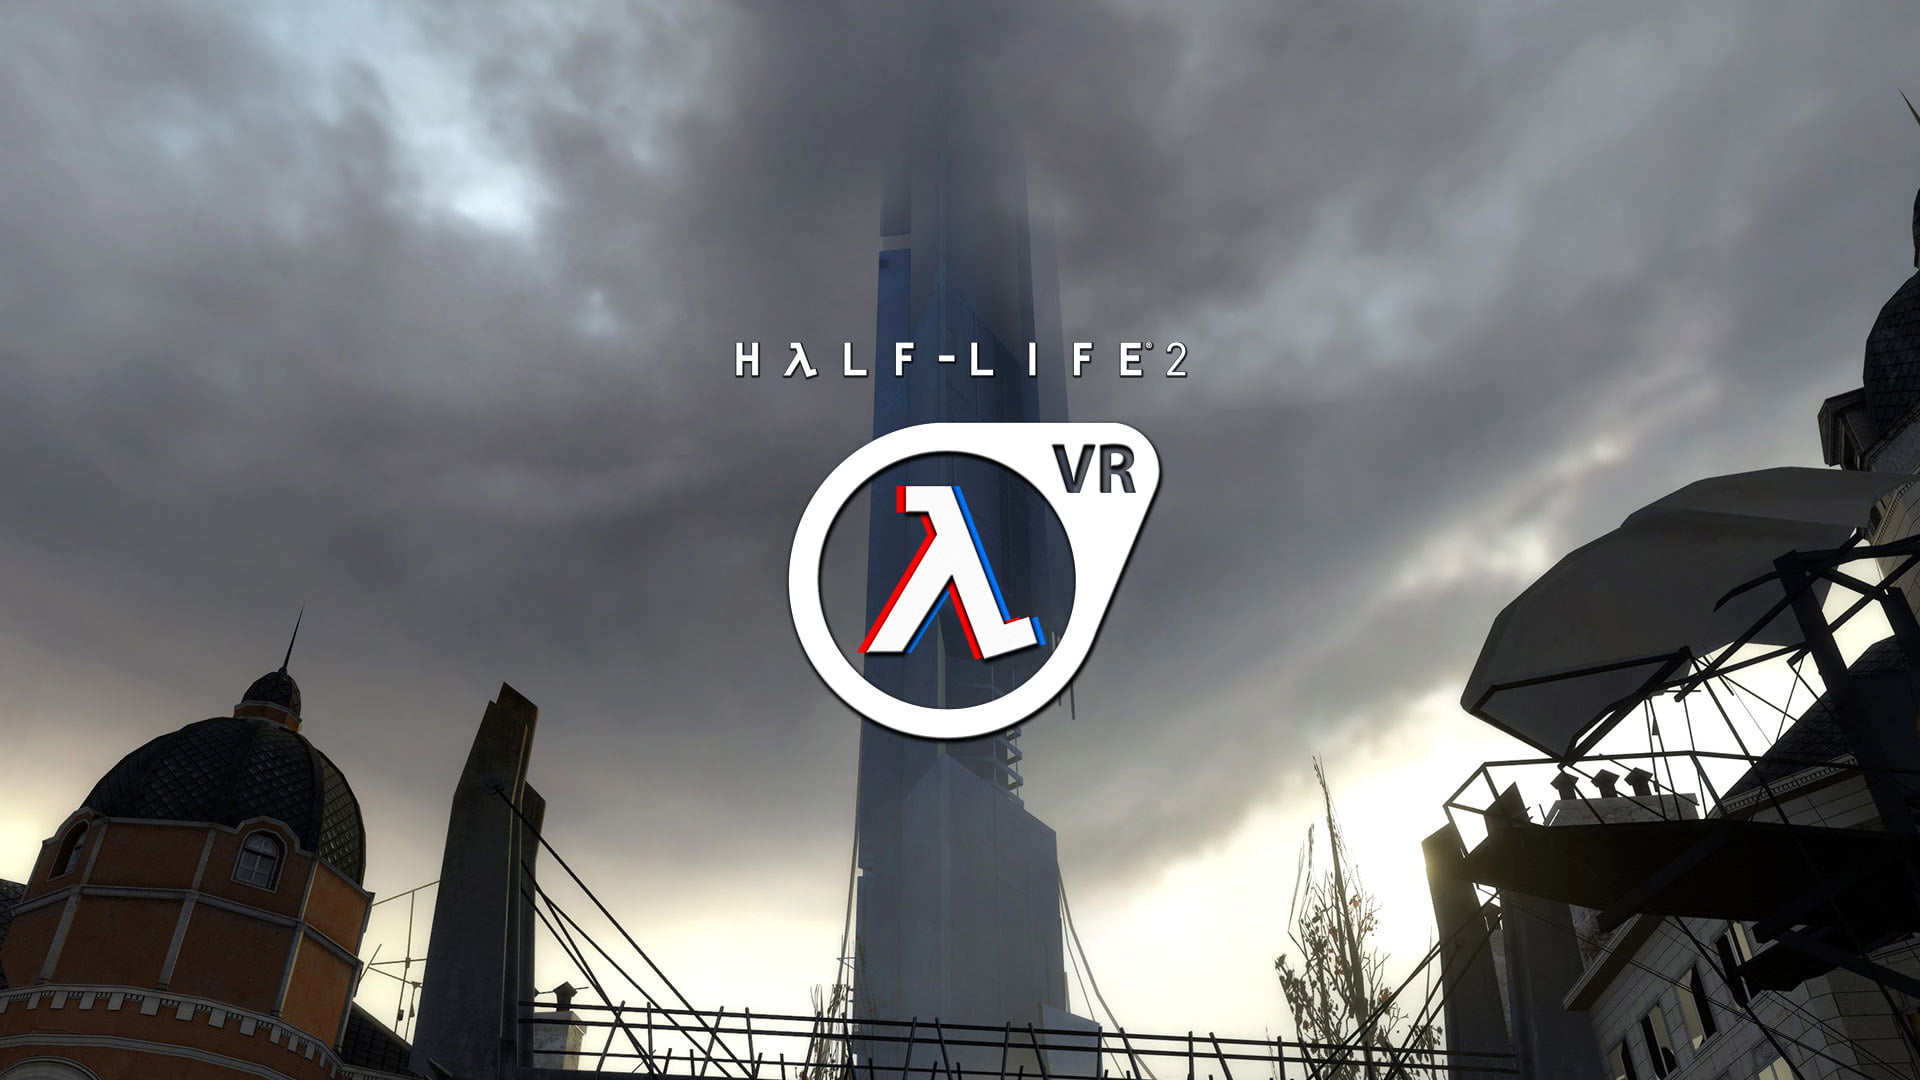 Angespielt: Half-Life 2 VR ist besser als das Original